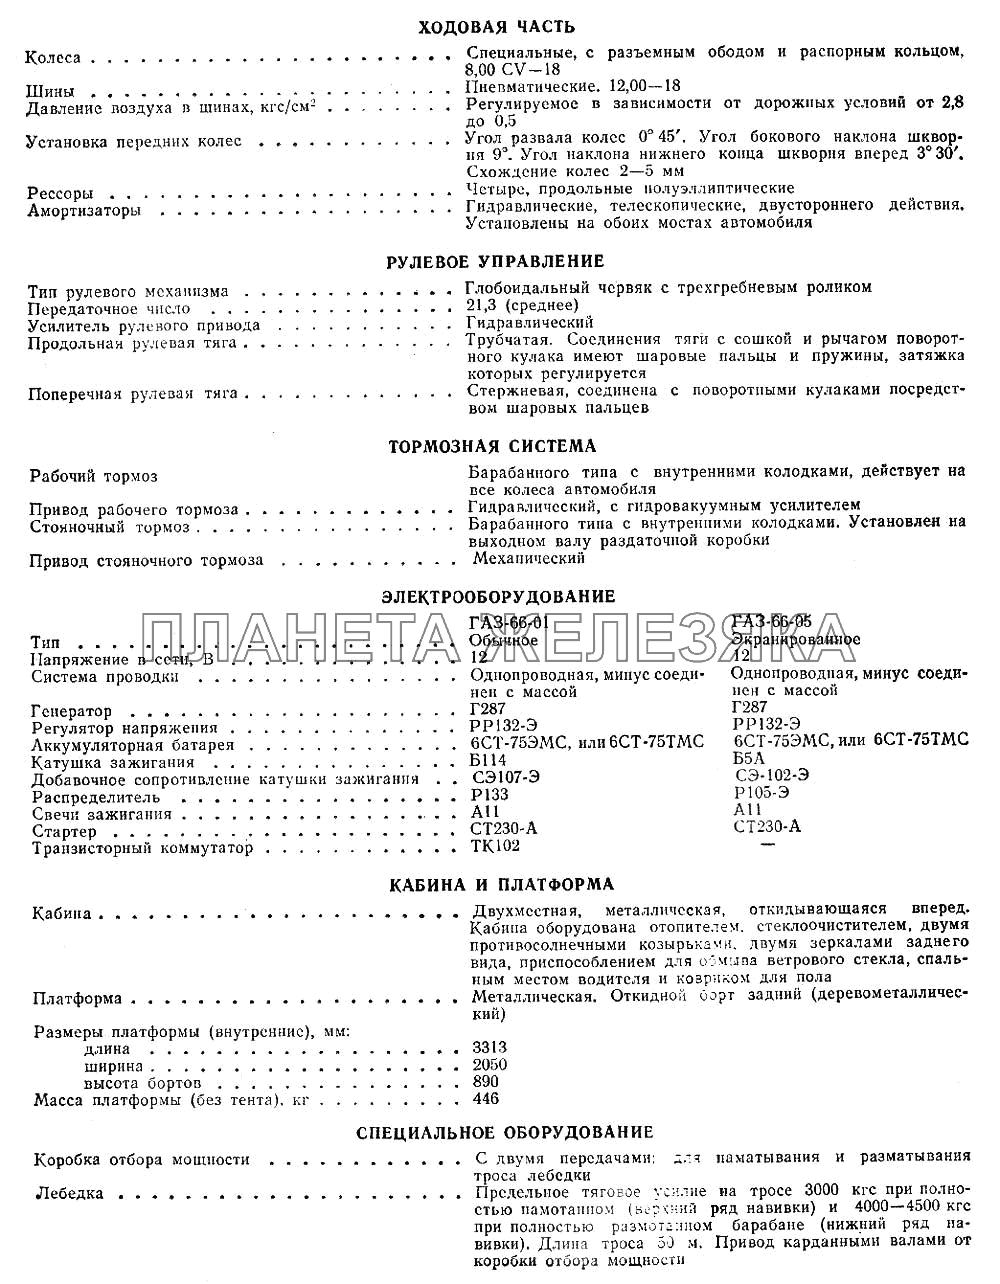 Лист 3 ГАЗ-66 (Каталог 1983 г.)